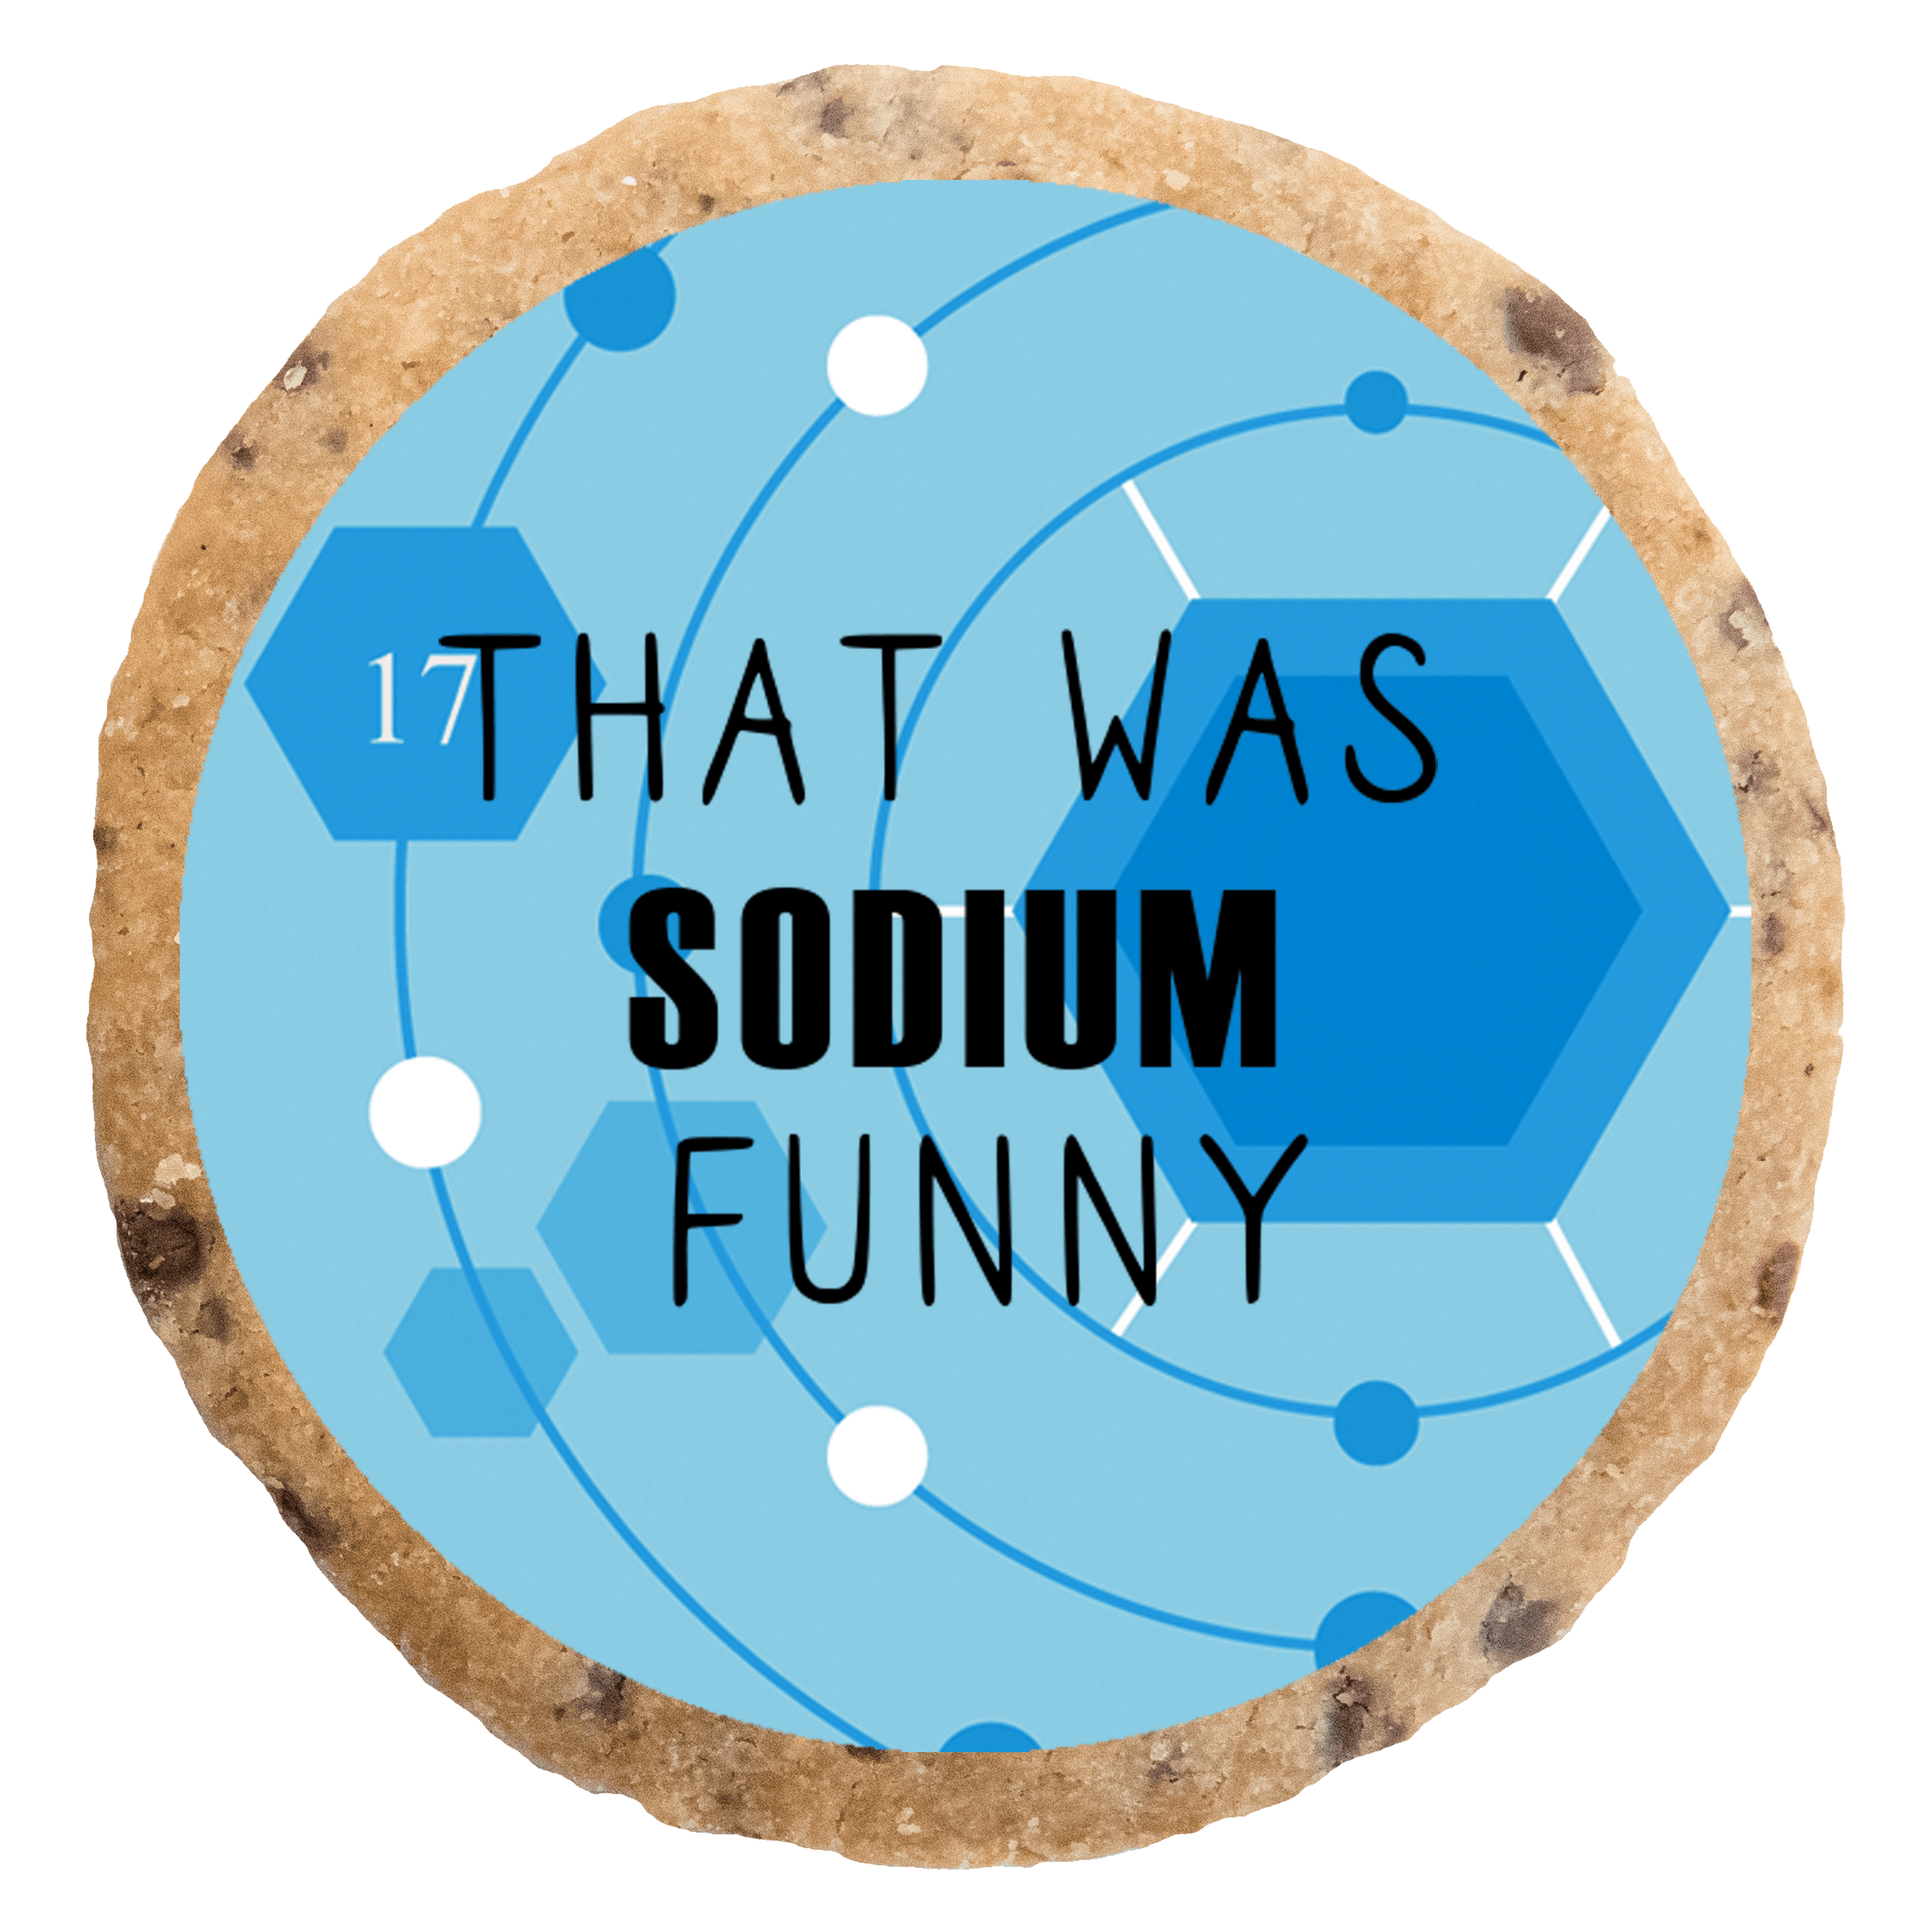 "Sodium funny" MotivKEKS